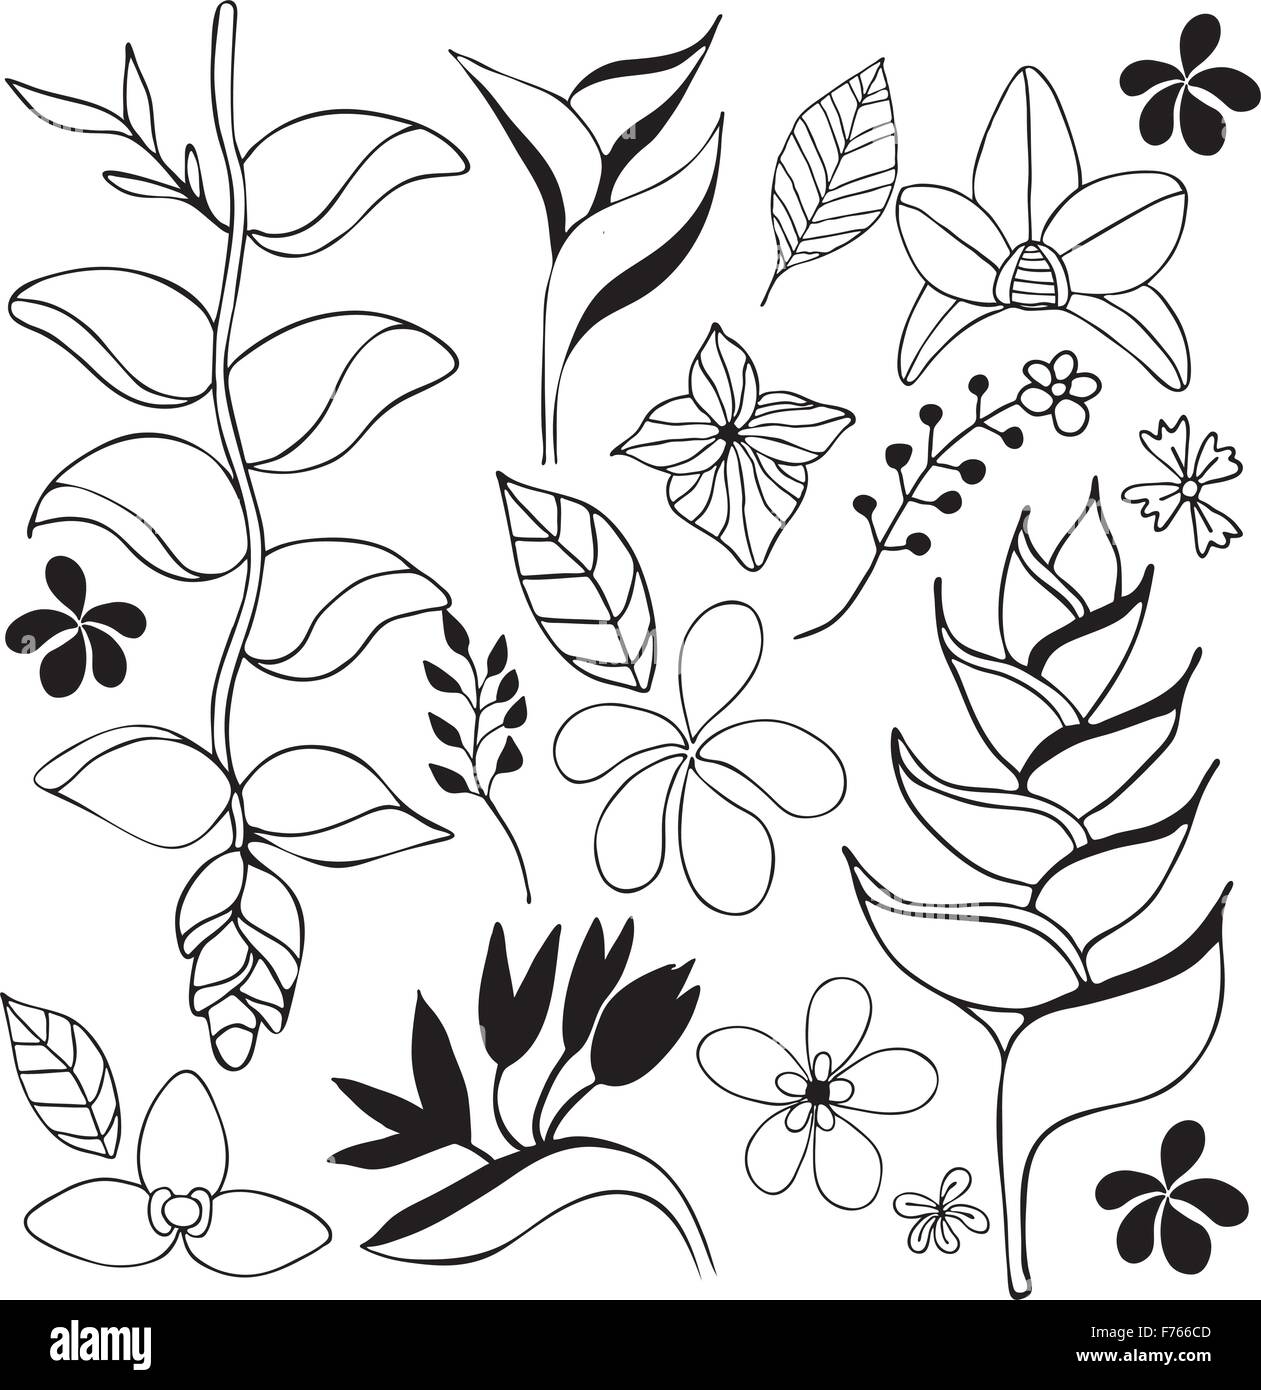 Fiore tropicale mano bozzetto illustrazione in bianco e nero Illustrazione Vettoriale